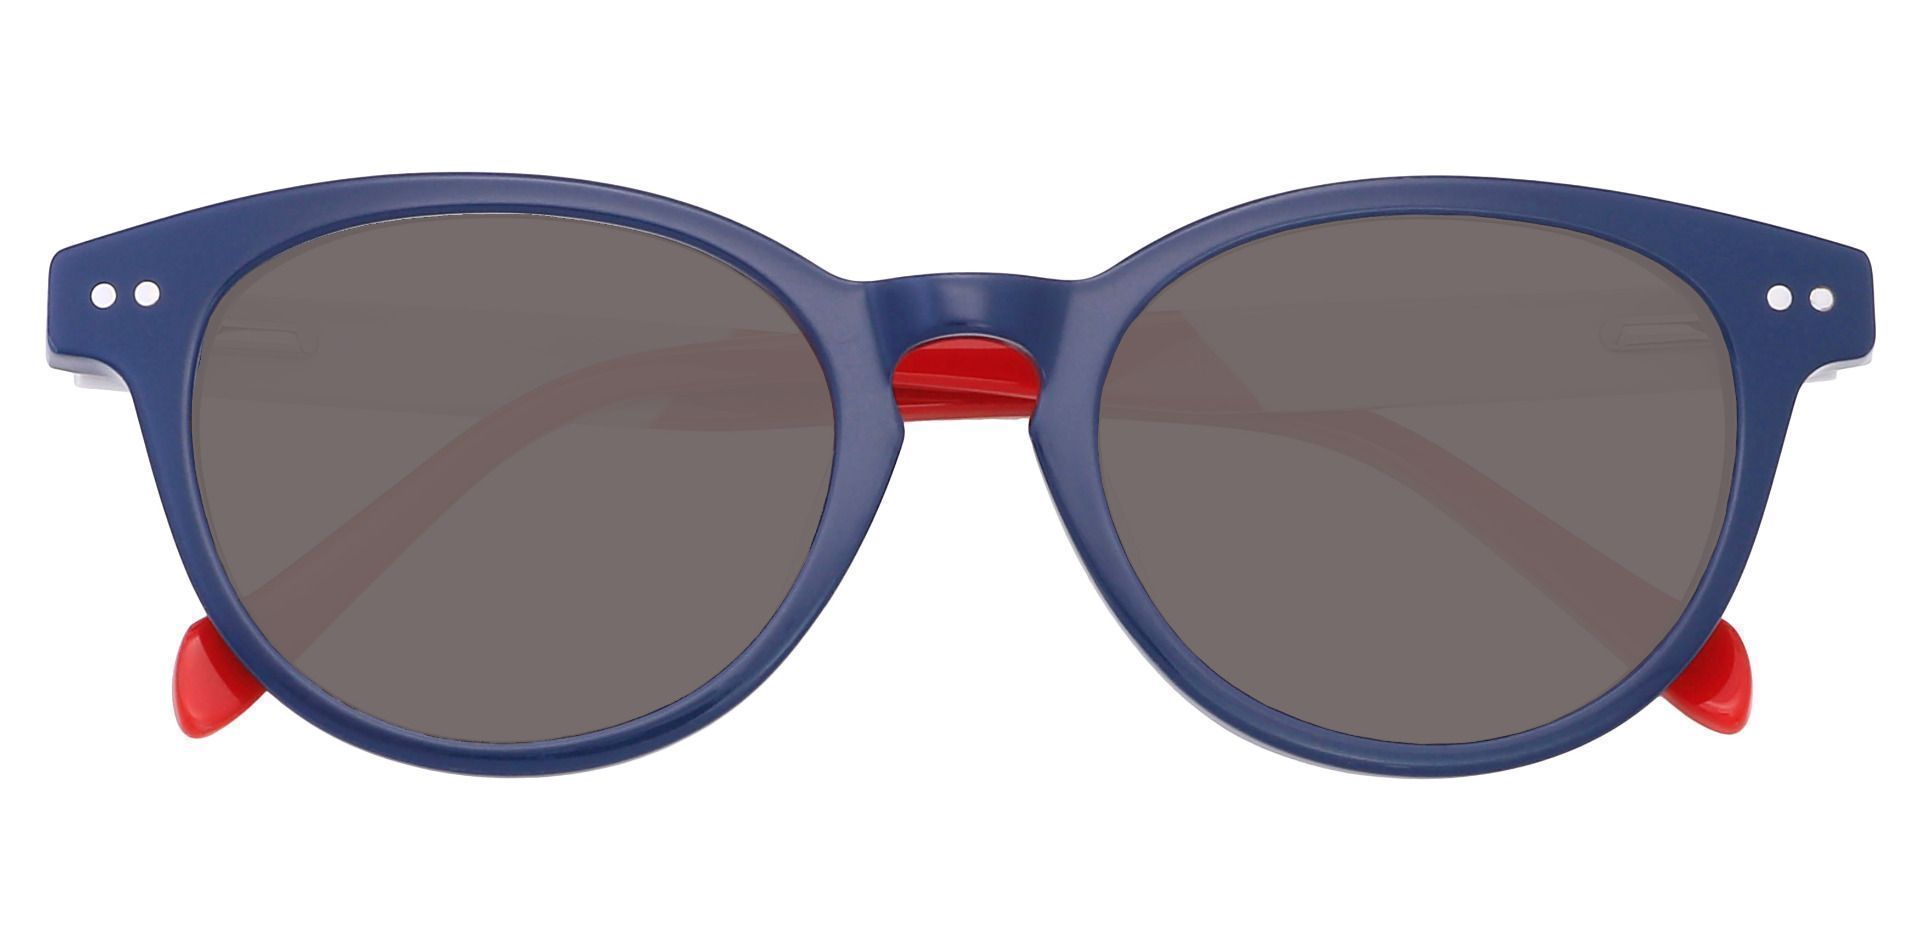 Revere Oval Reading Sunglasses - Blue Frame With Gray Lenses